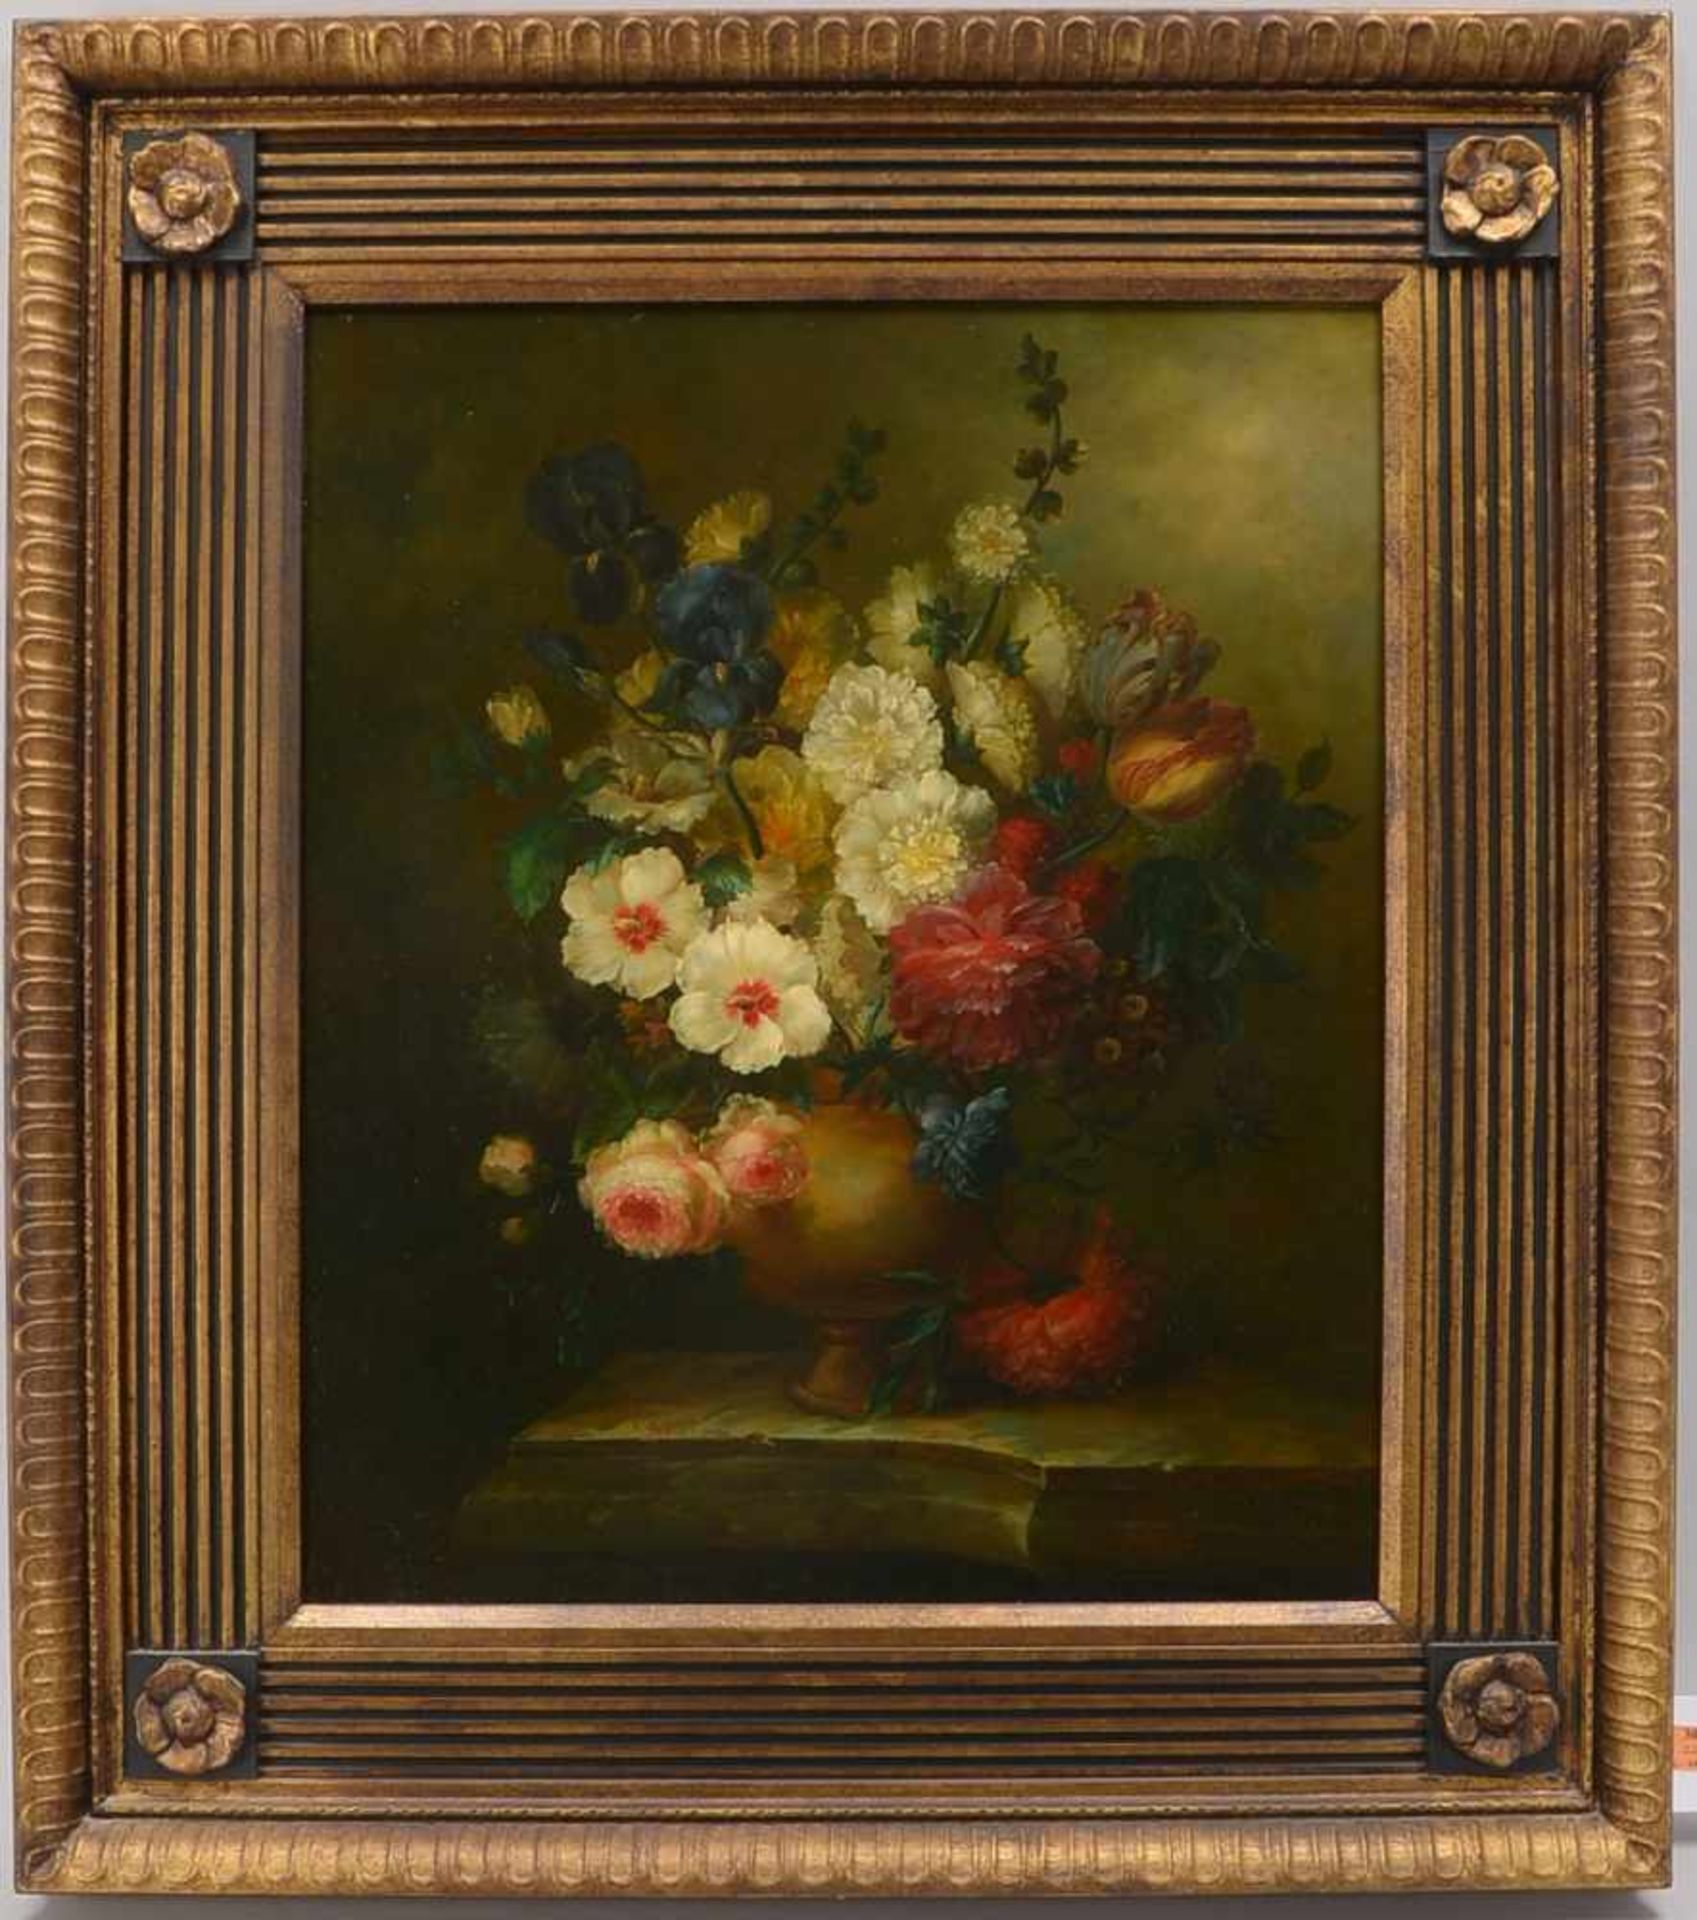 Gemälde, 'Blumenstillleben' (Pendant zu Pos. 3046 - im gleichen Format und Rahmen), Öl auf Holz/